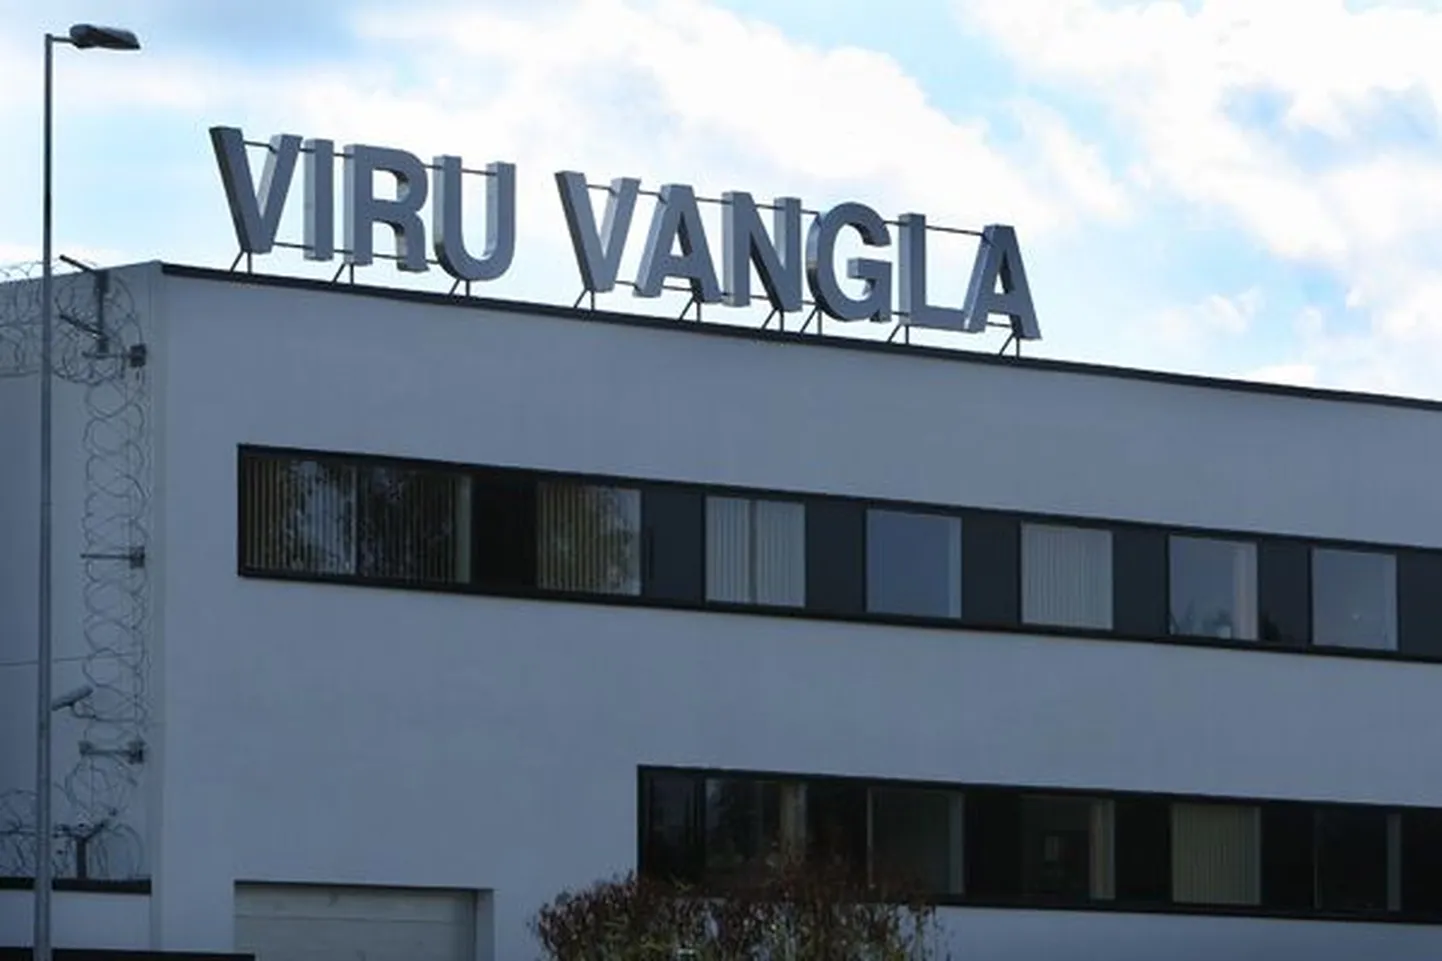 Viru Vangla.